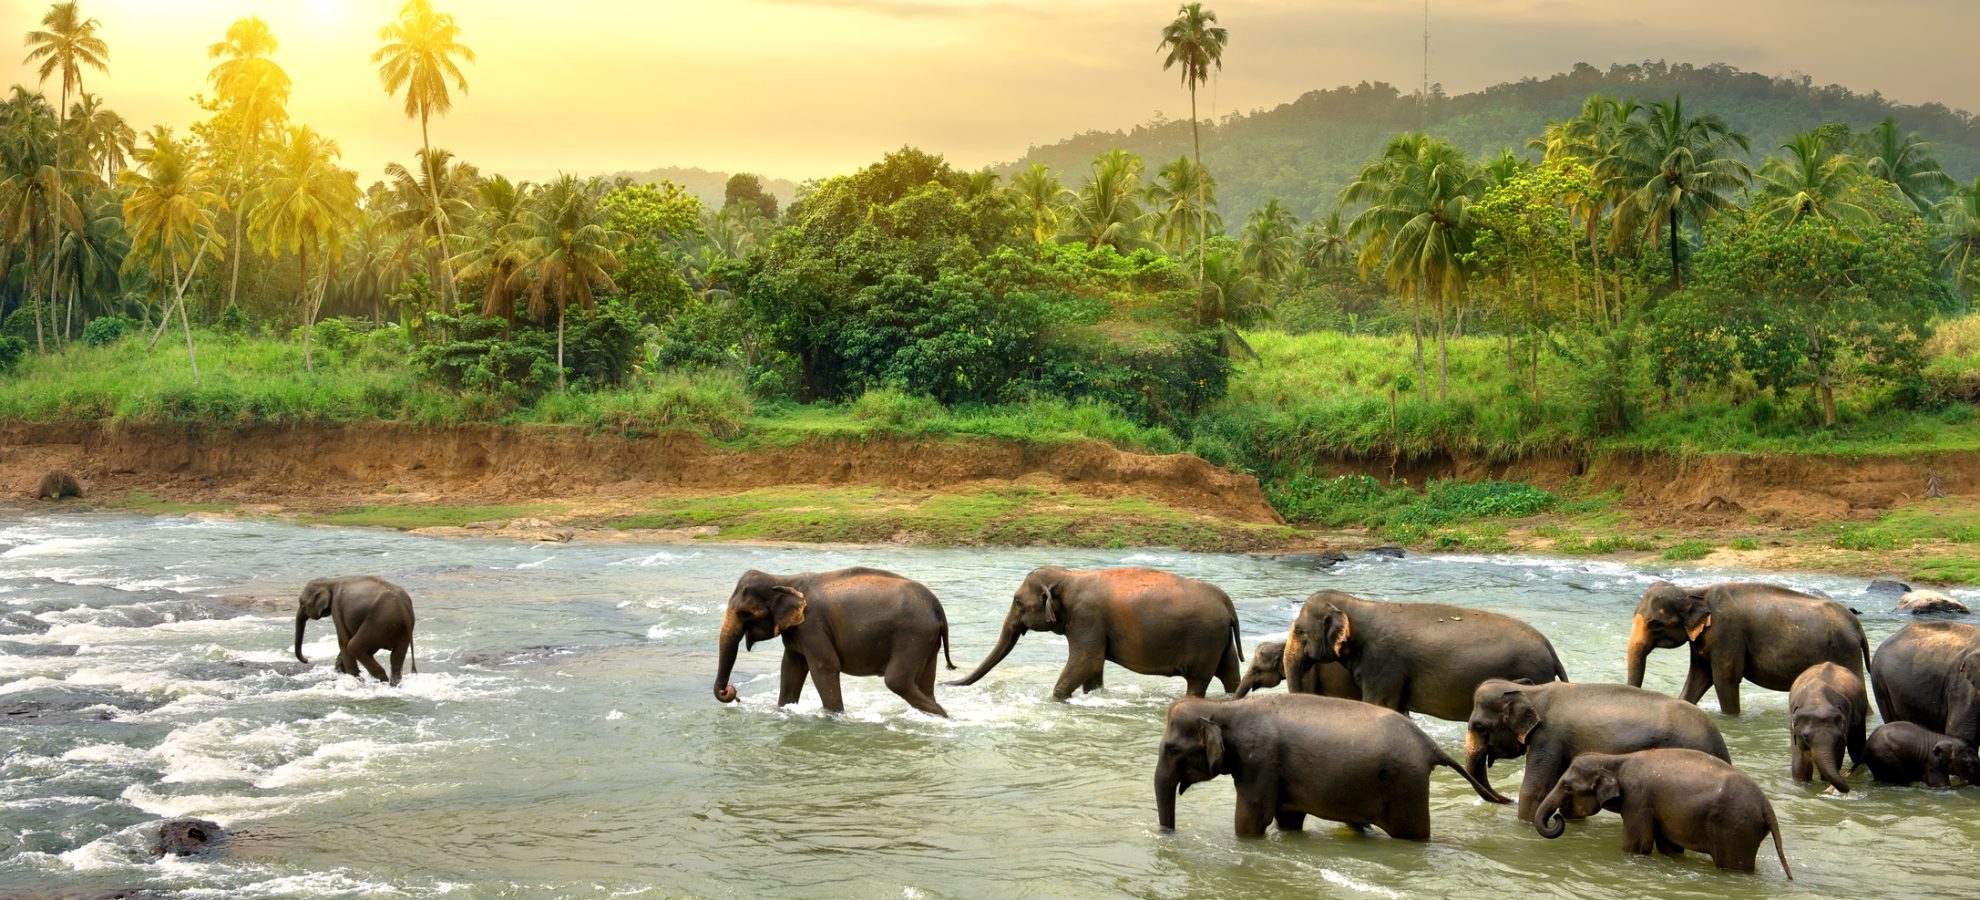 Olifanten door de rivier in Sri Lanka